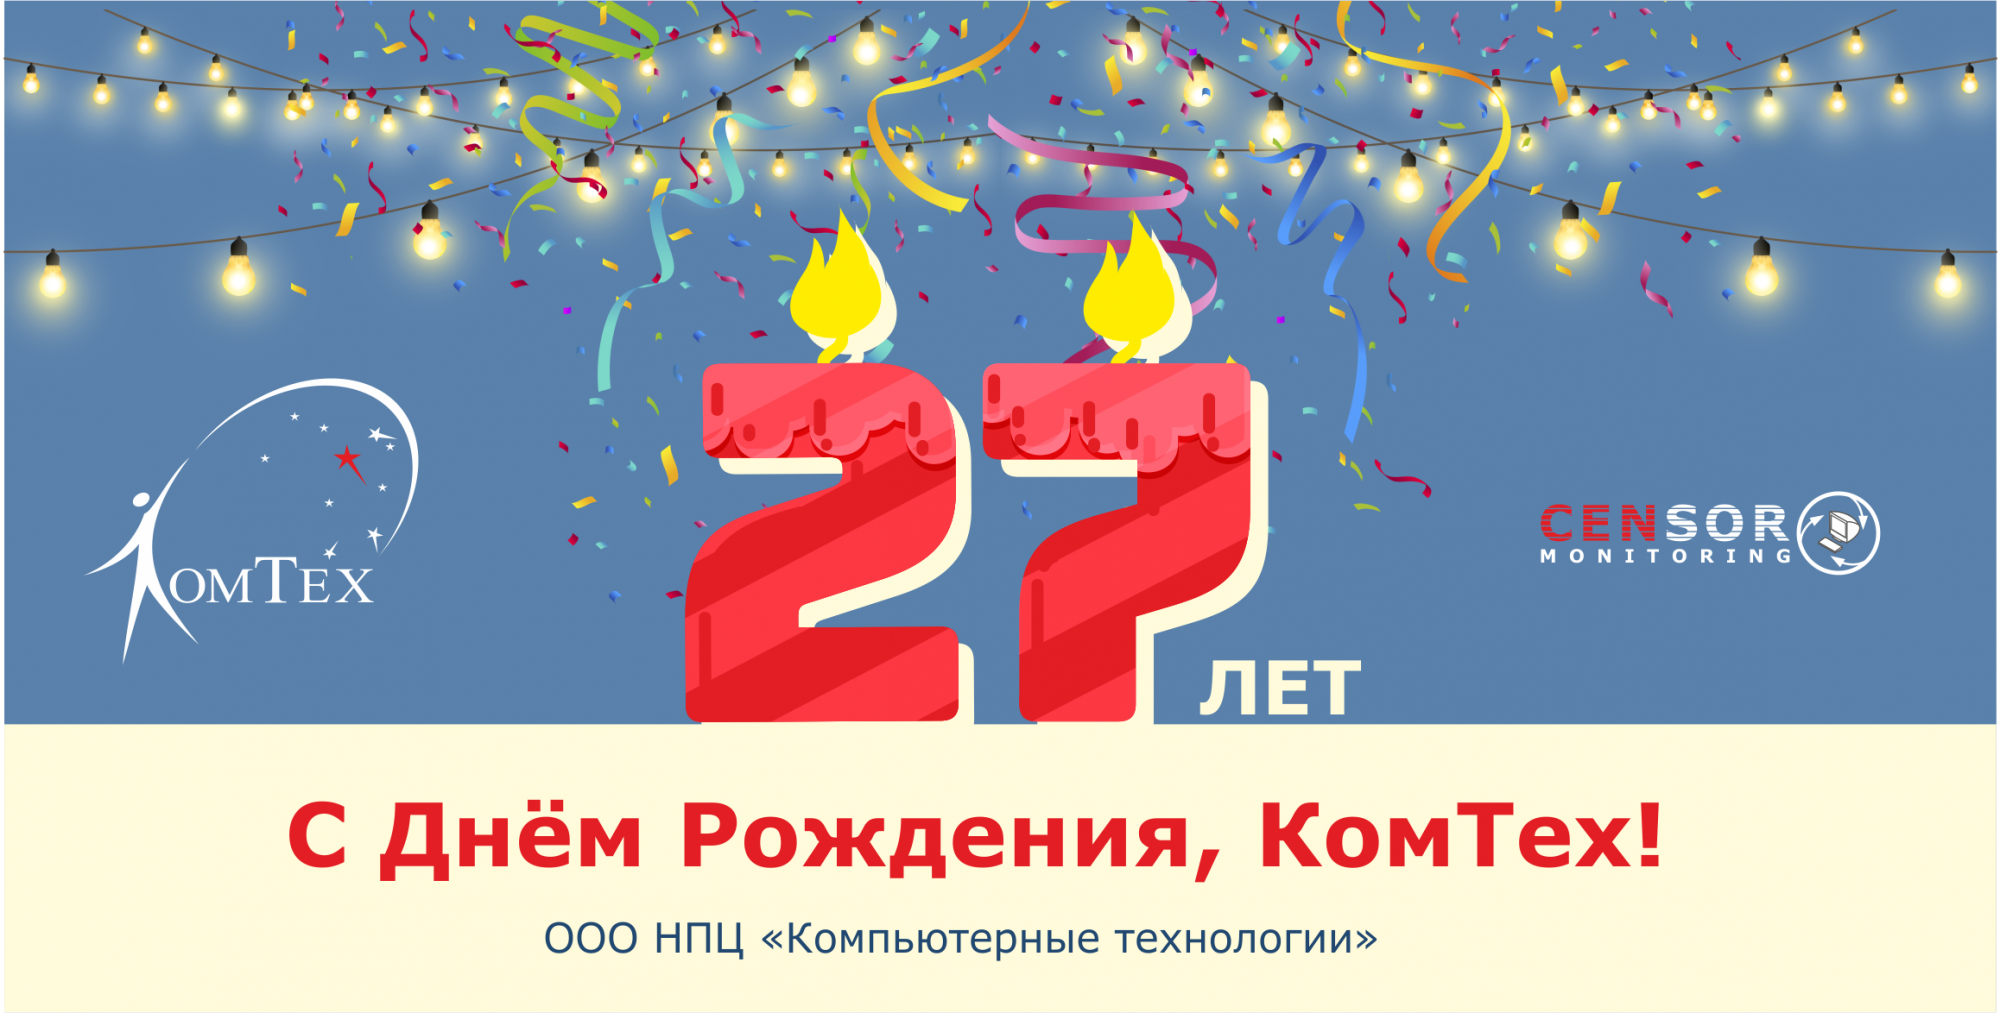 КомТех празднует свое 27-летие